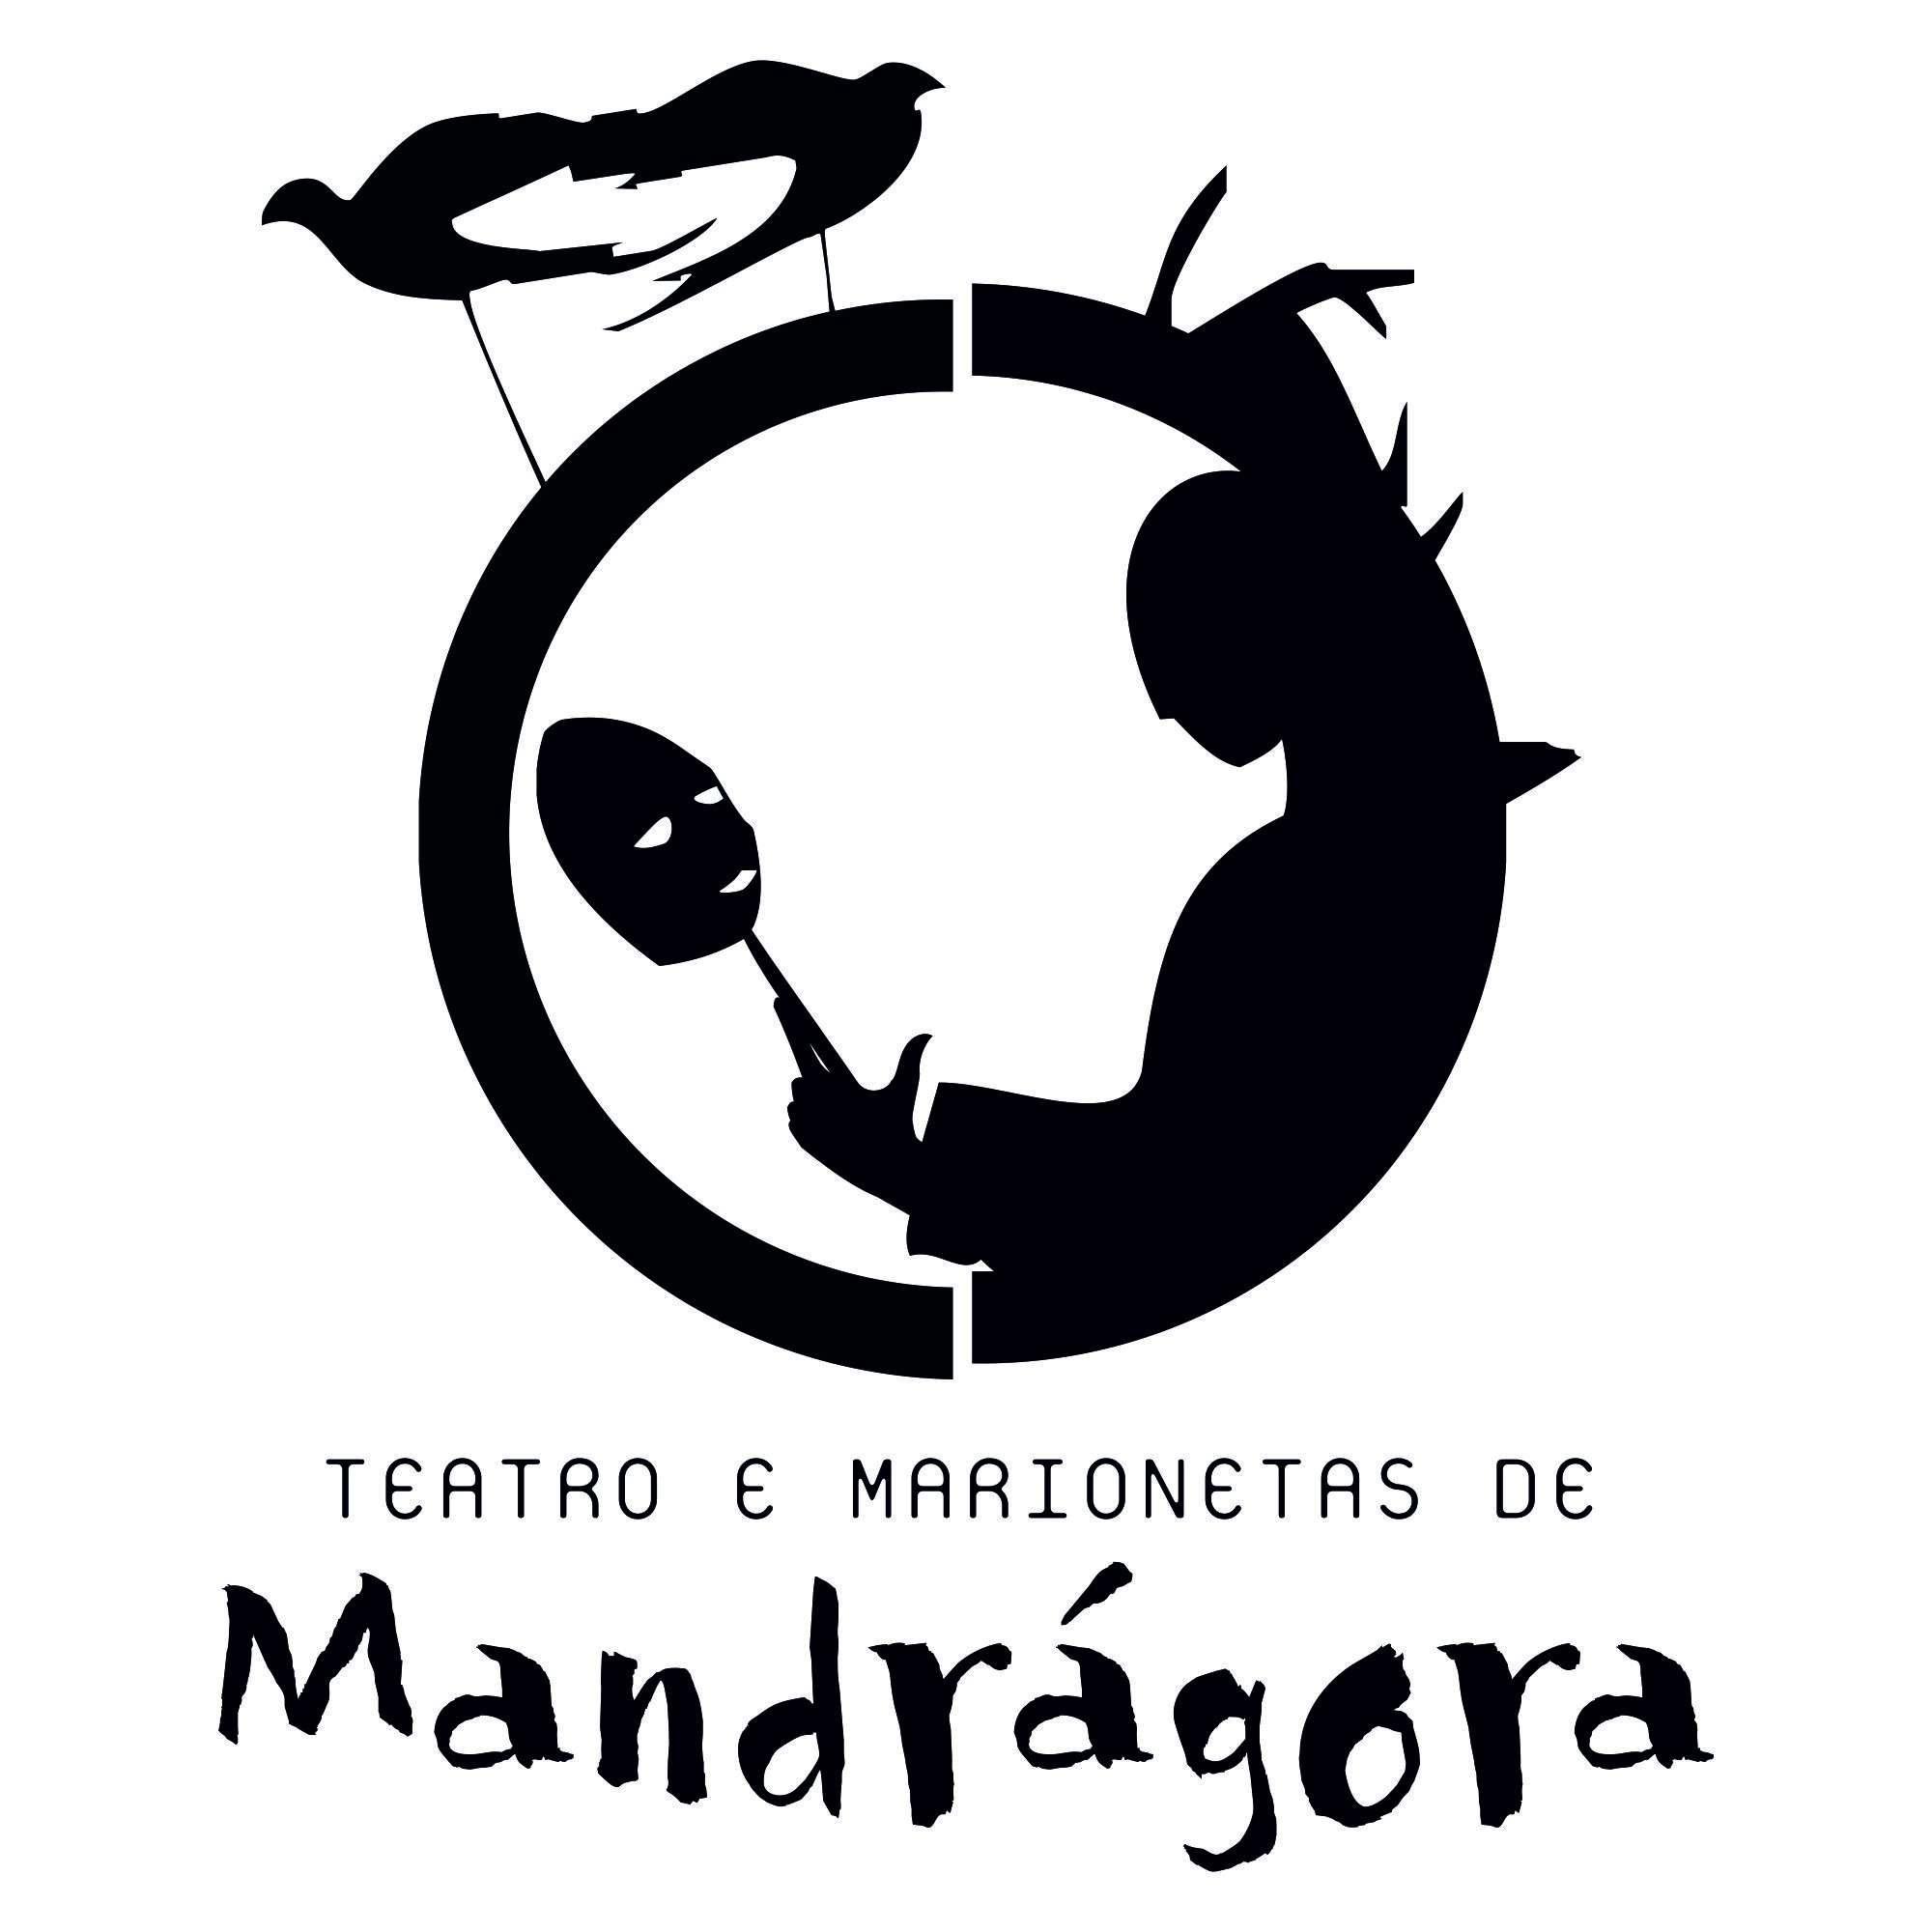 Teatro e Marionetas de Mandrágora